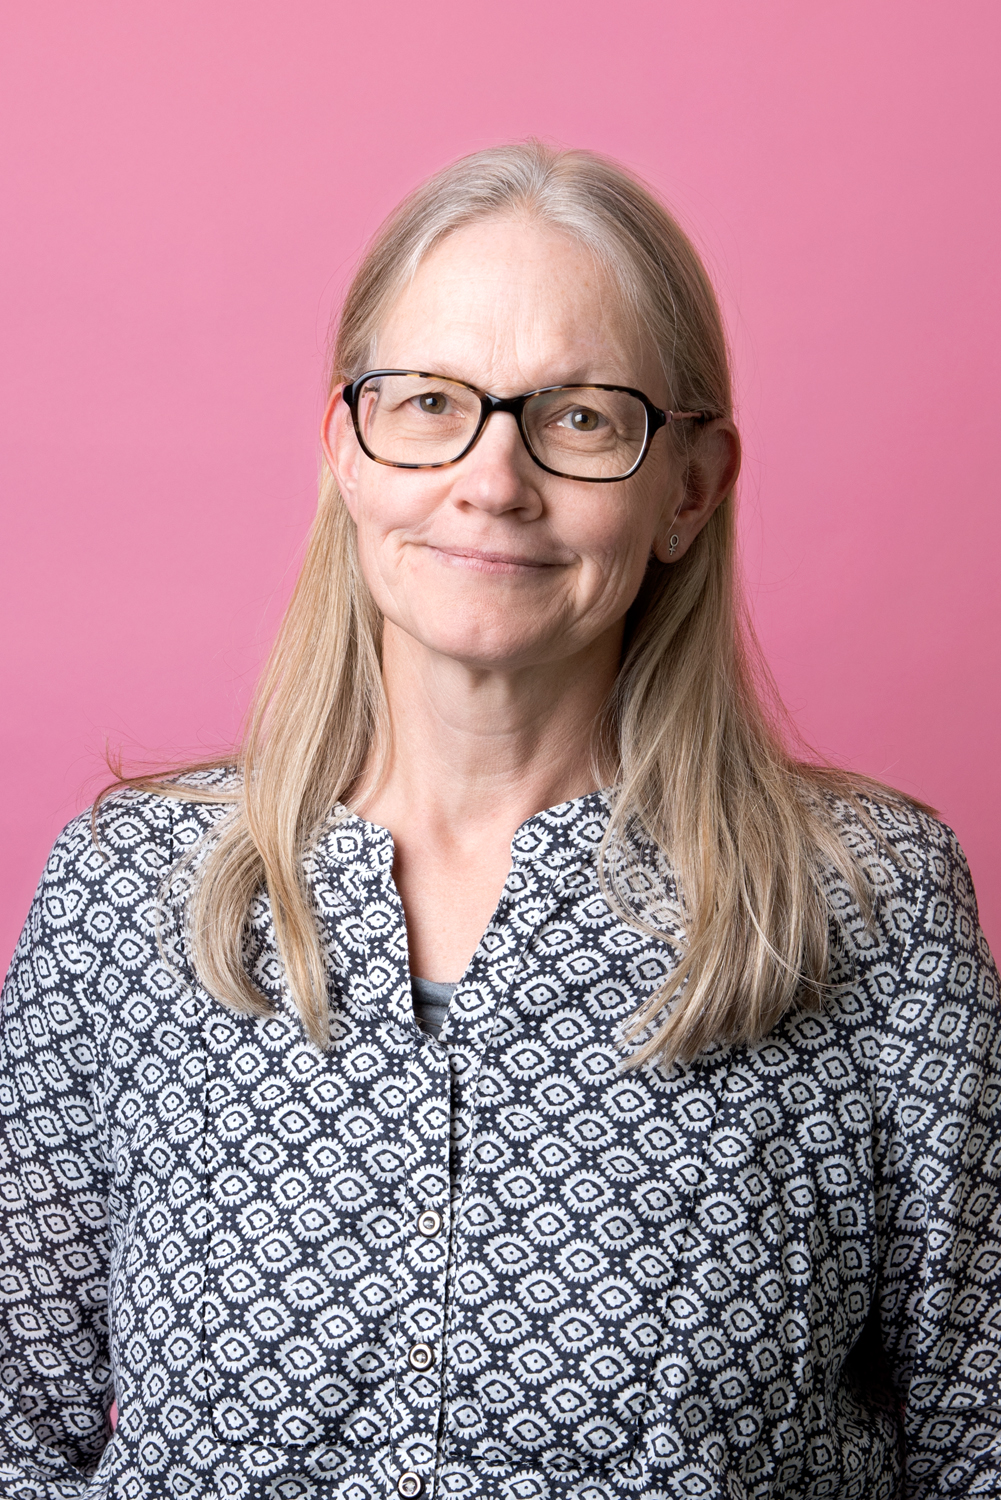 Porträttbild Karin Gustavsson. Karin har fyrkantiga glasögon och tittar rakt in i kameran. Hon bär en mönstrad blus i blått och vitt.